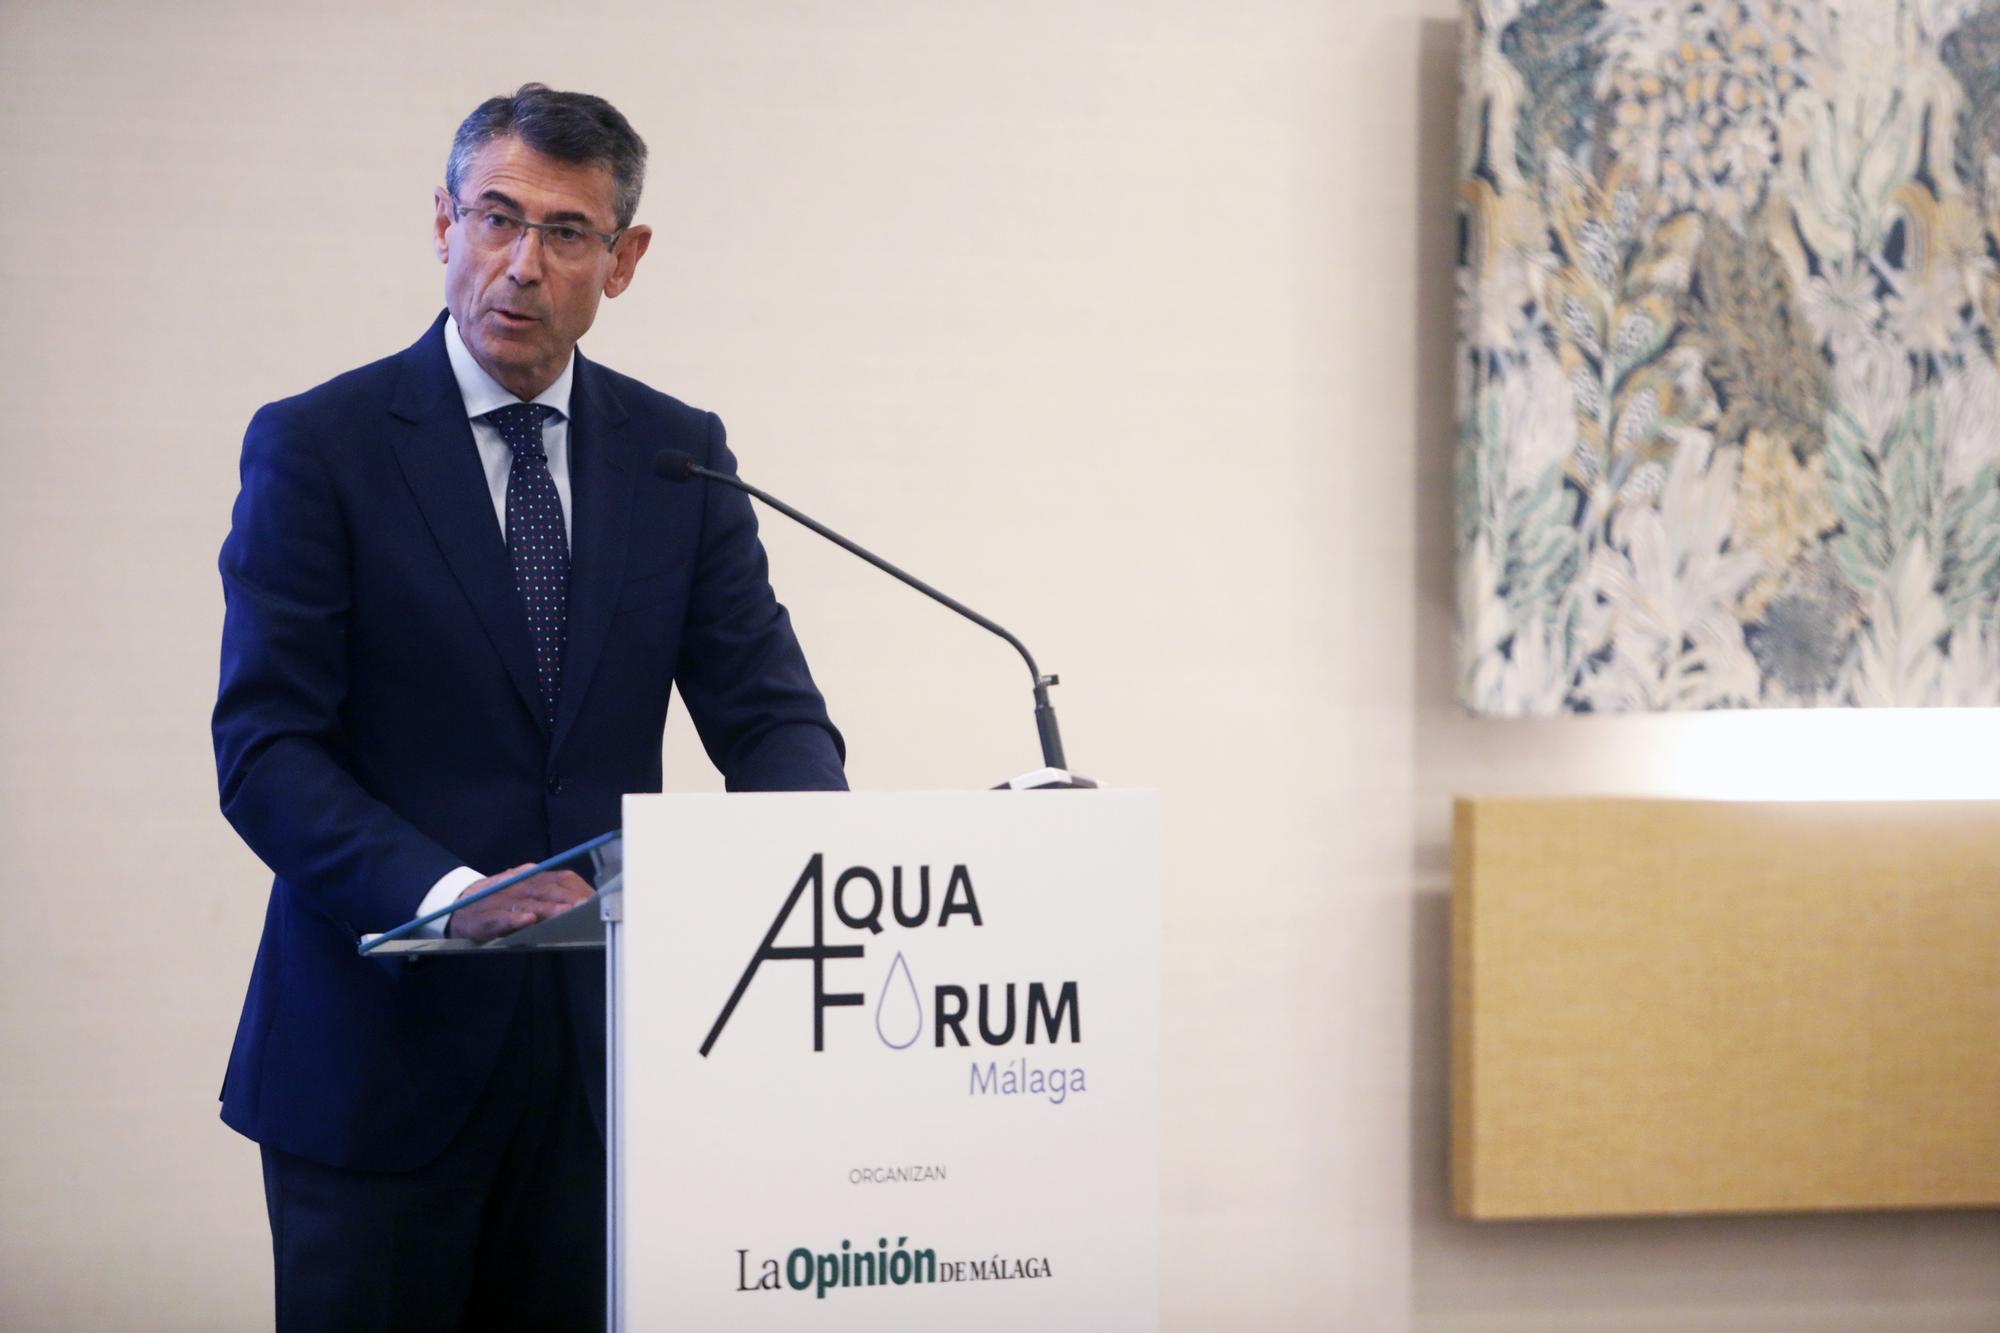 La Opinión y Prensa Ibérica celebran Aquaforum Málaga